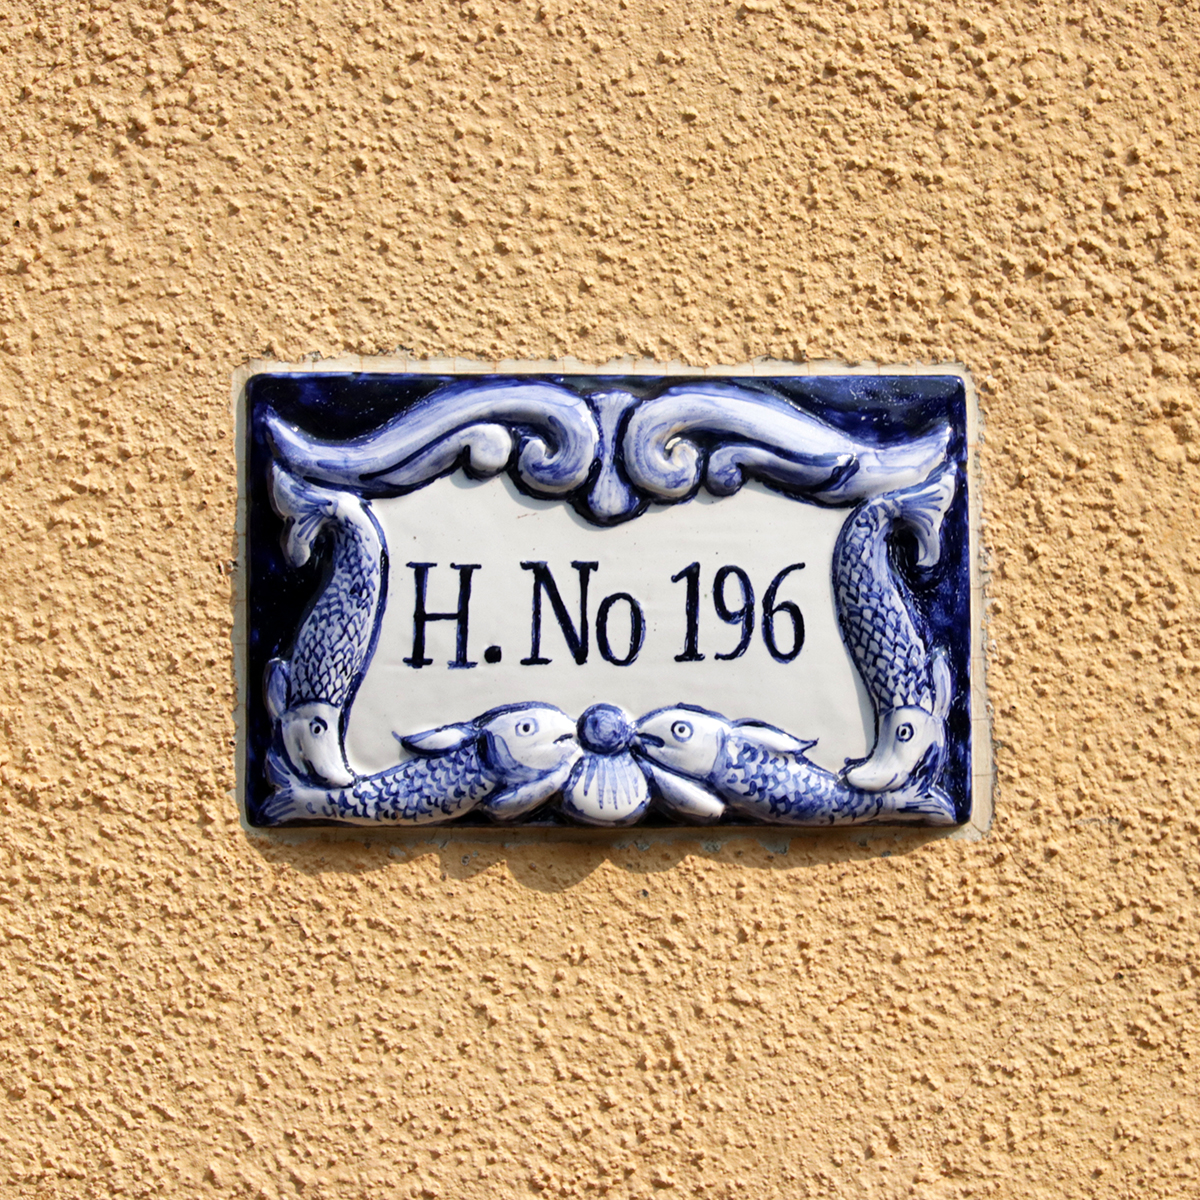 H. No 196